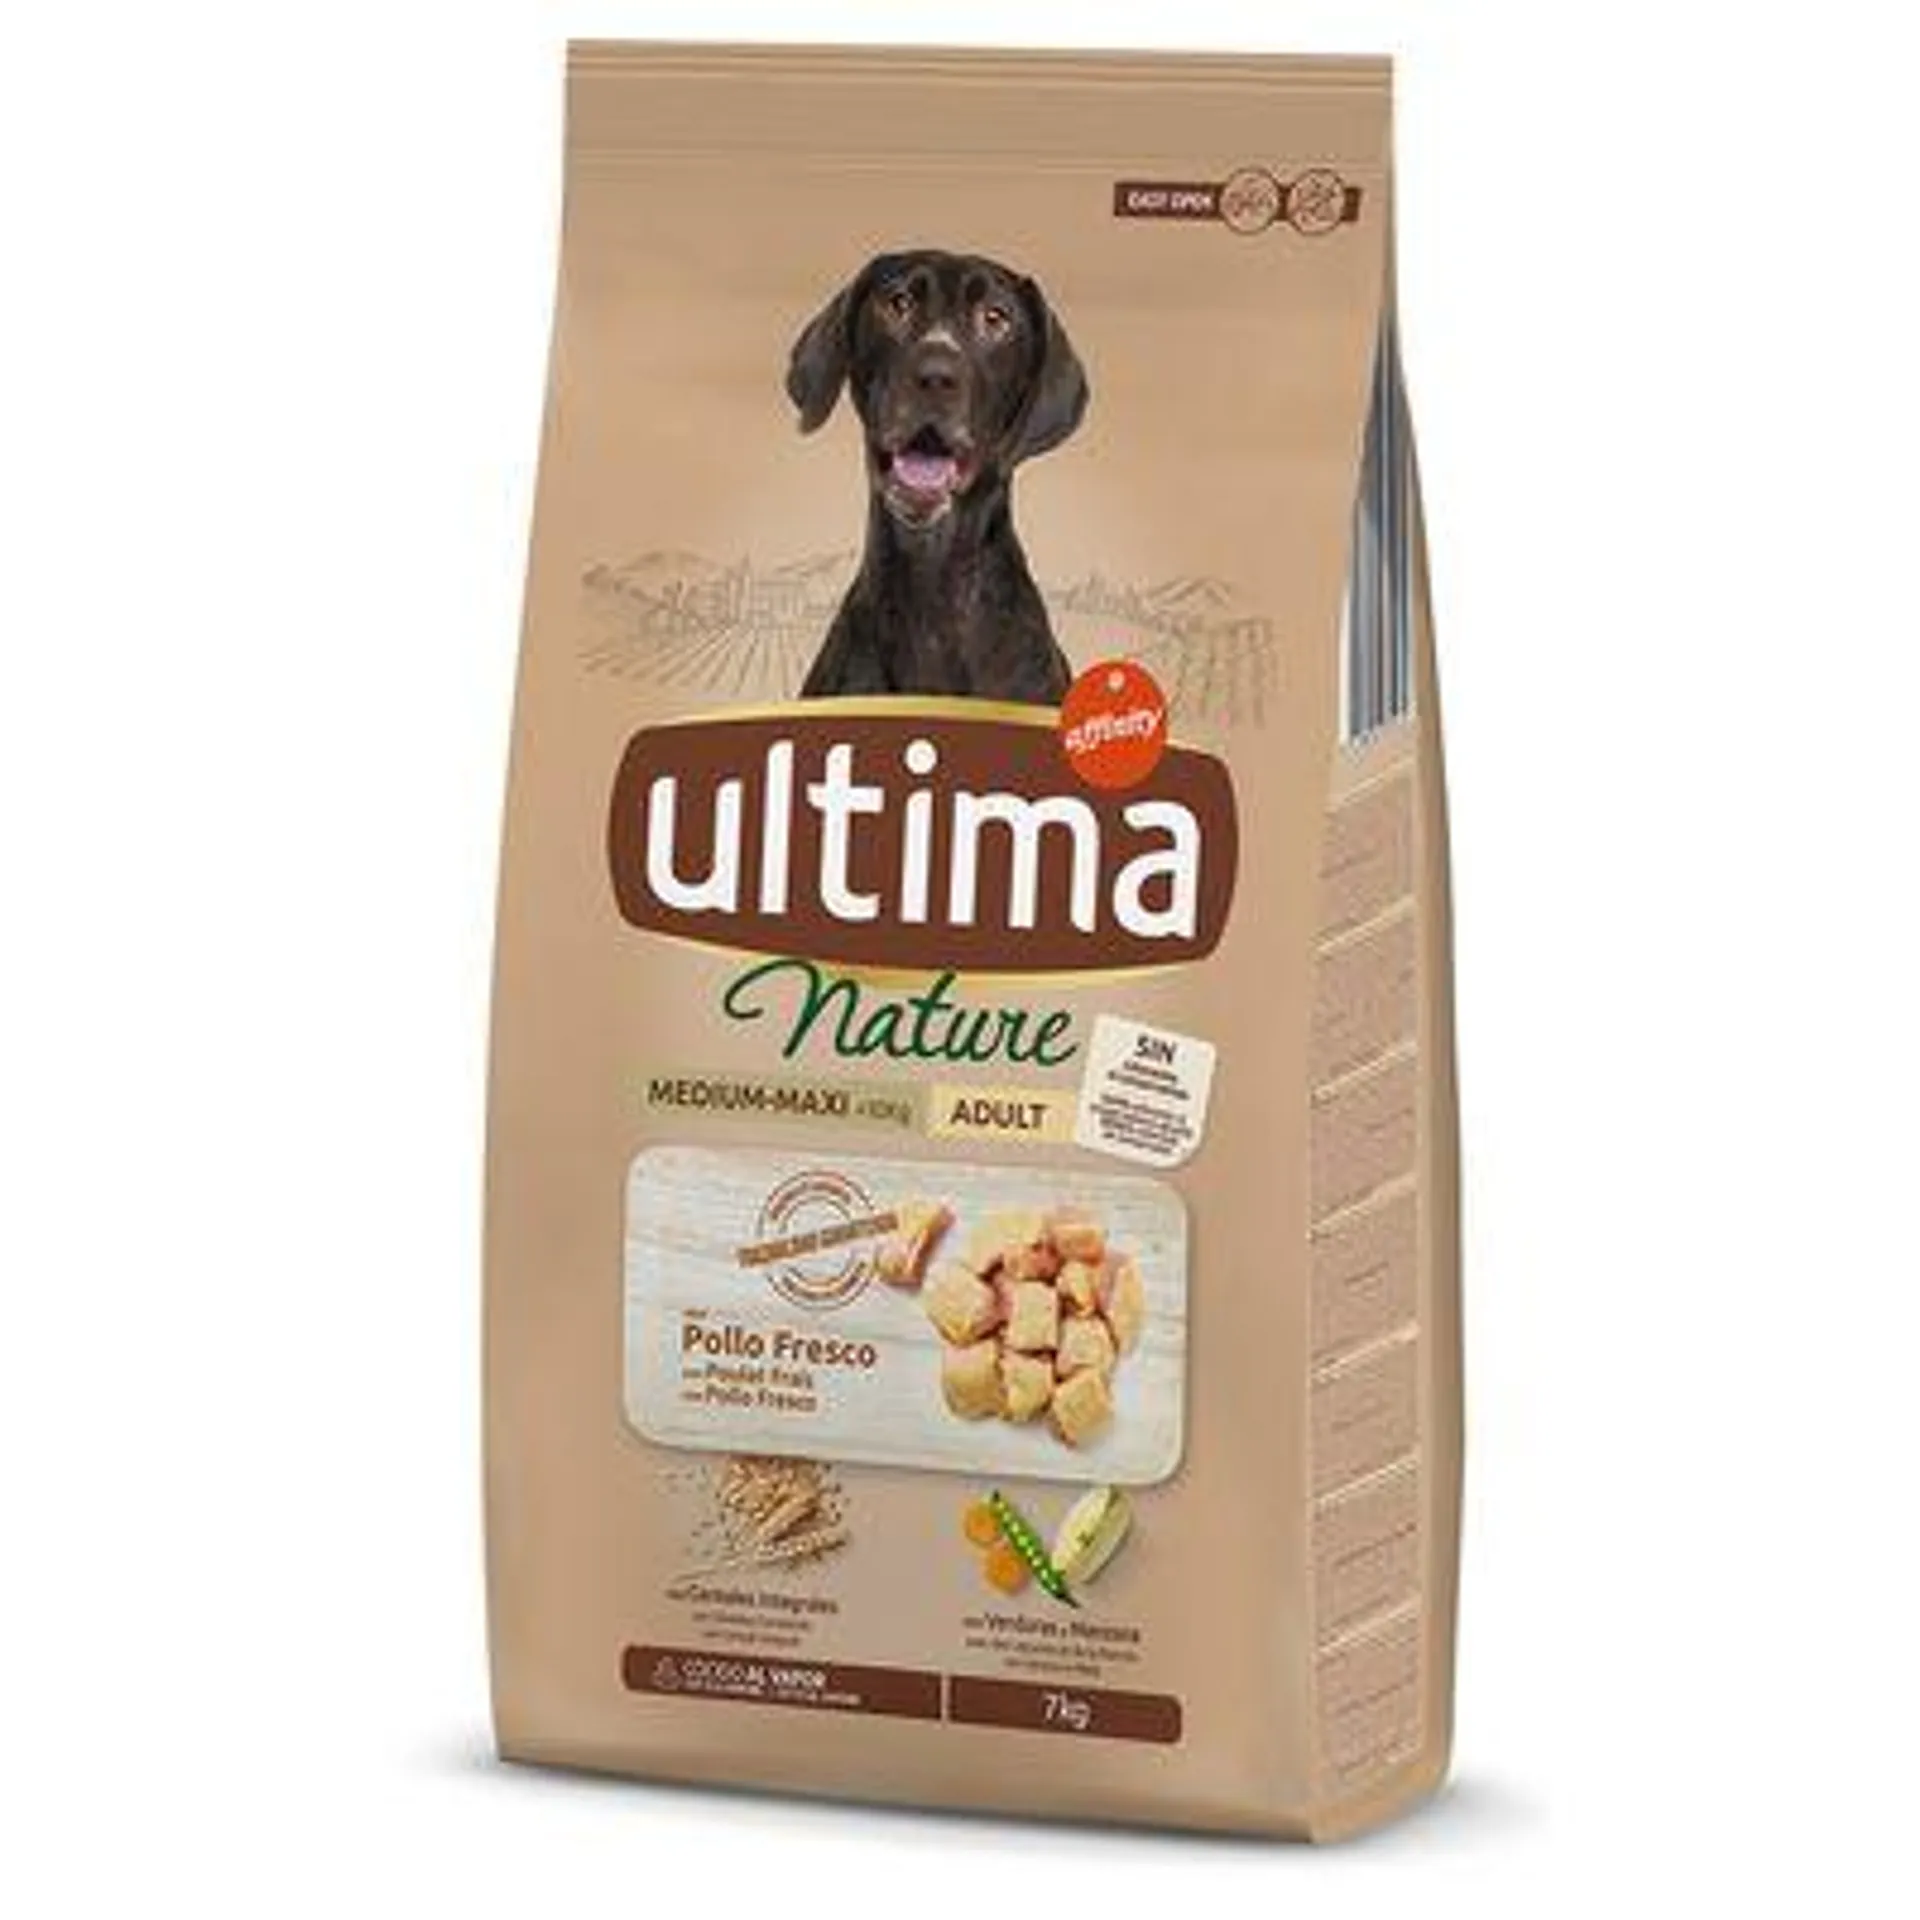 Ultima Nature Medium / Maxi 2 x 2,7 à 7 kg : 40 % de remise sur le 2ème sac !